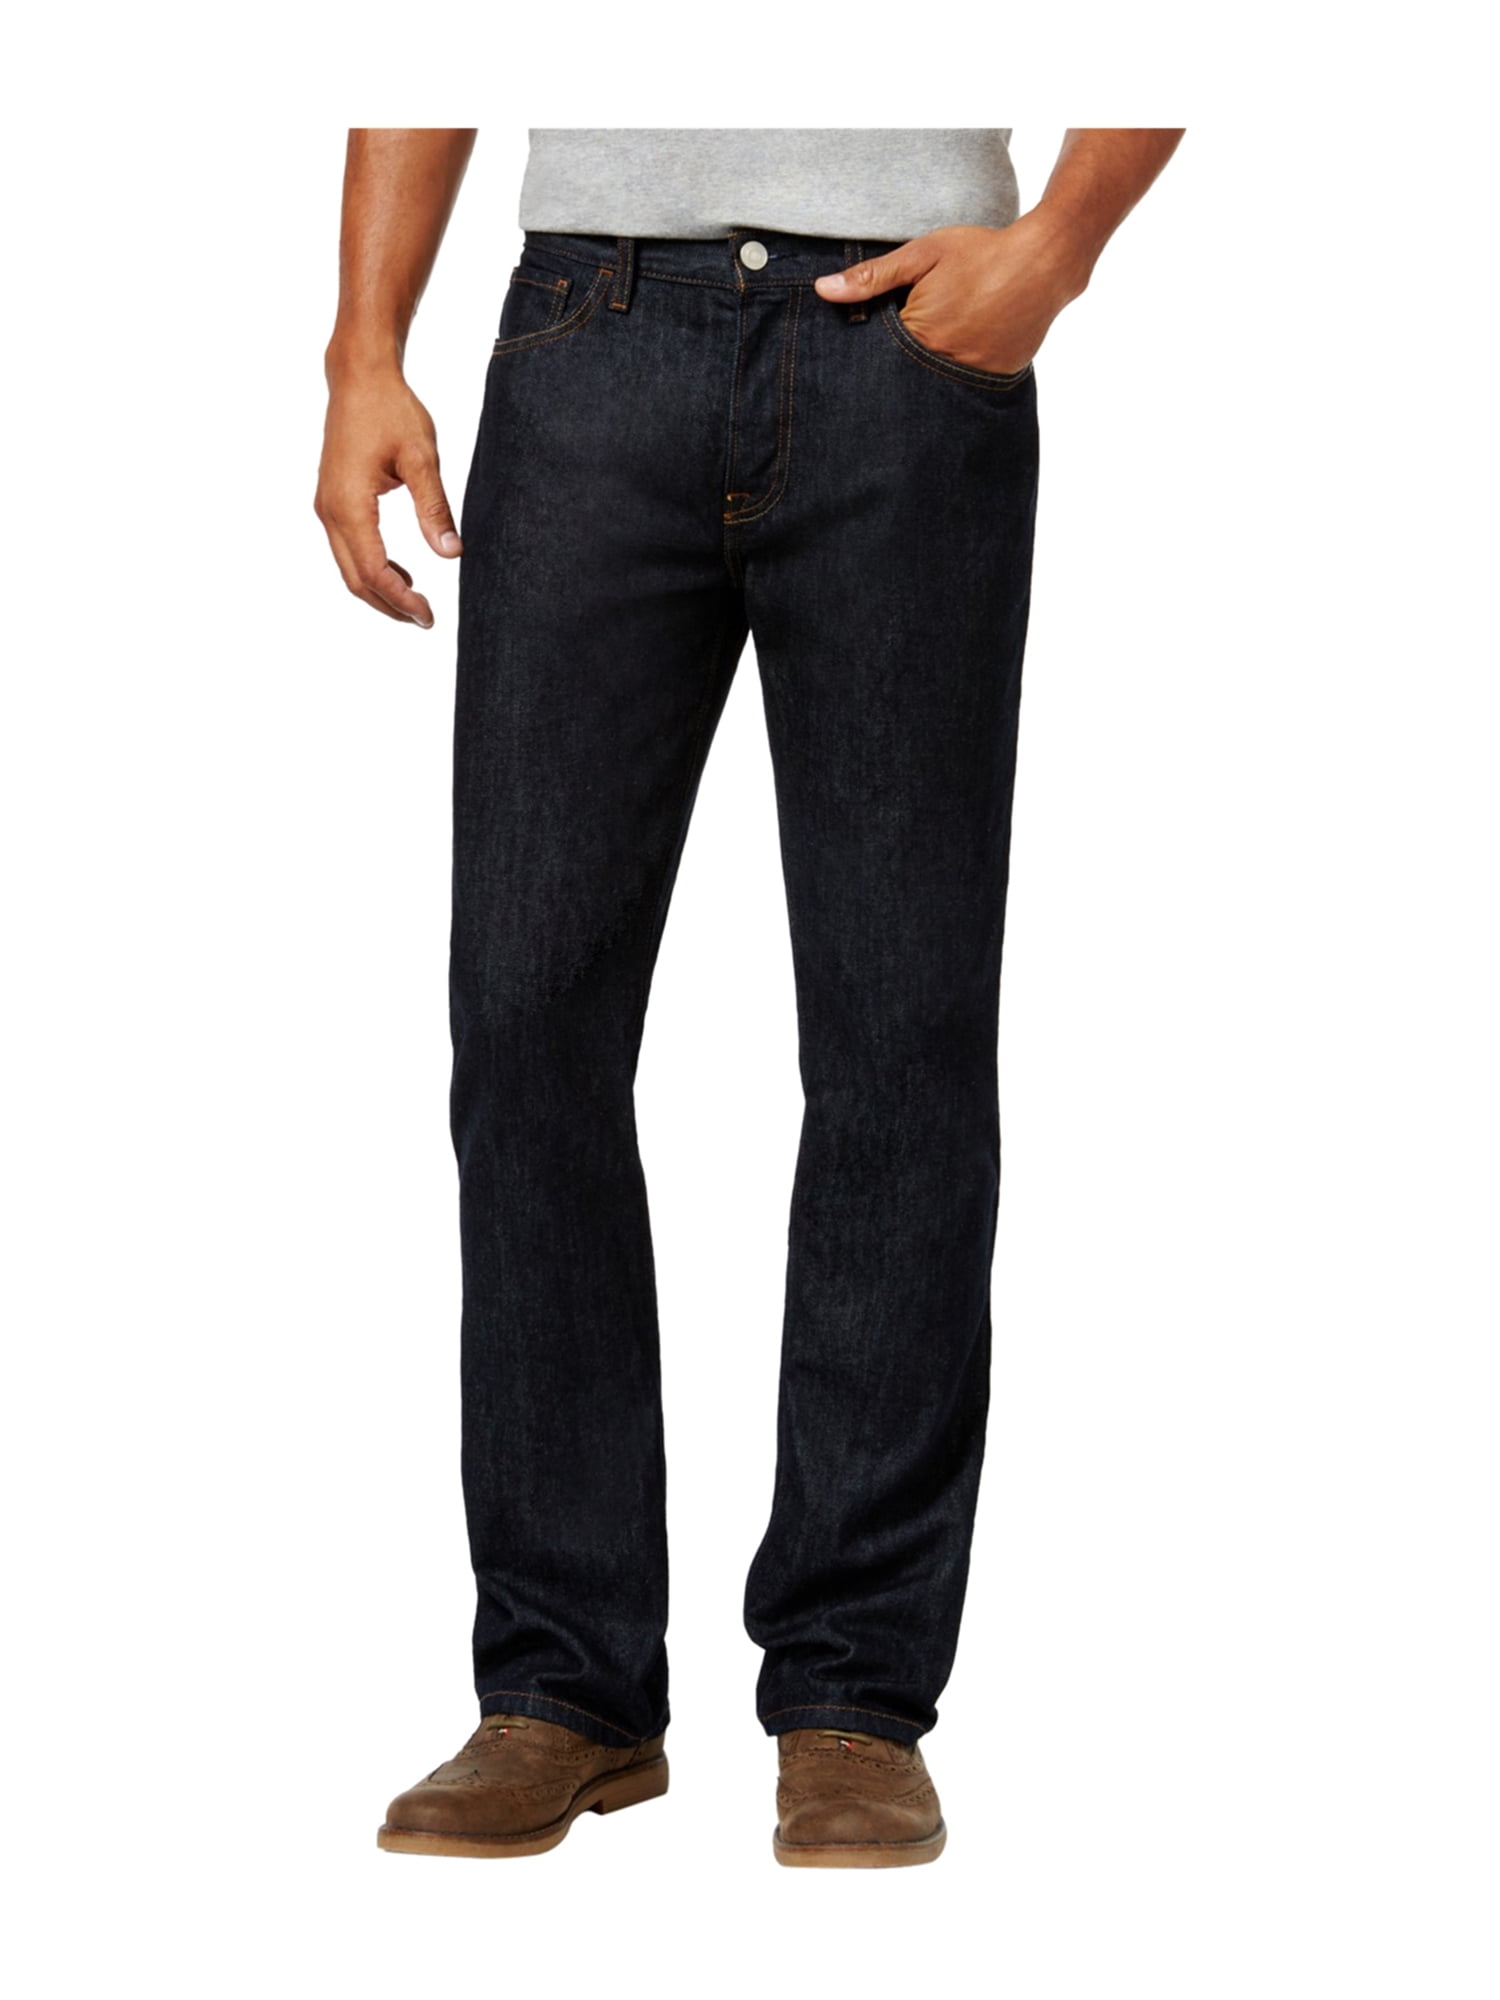 Tommy Hilfiger Mens Dark Denim Boot Cut Jeans 933 32x34 | Walmart Canada